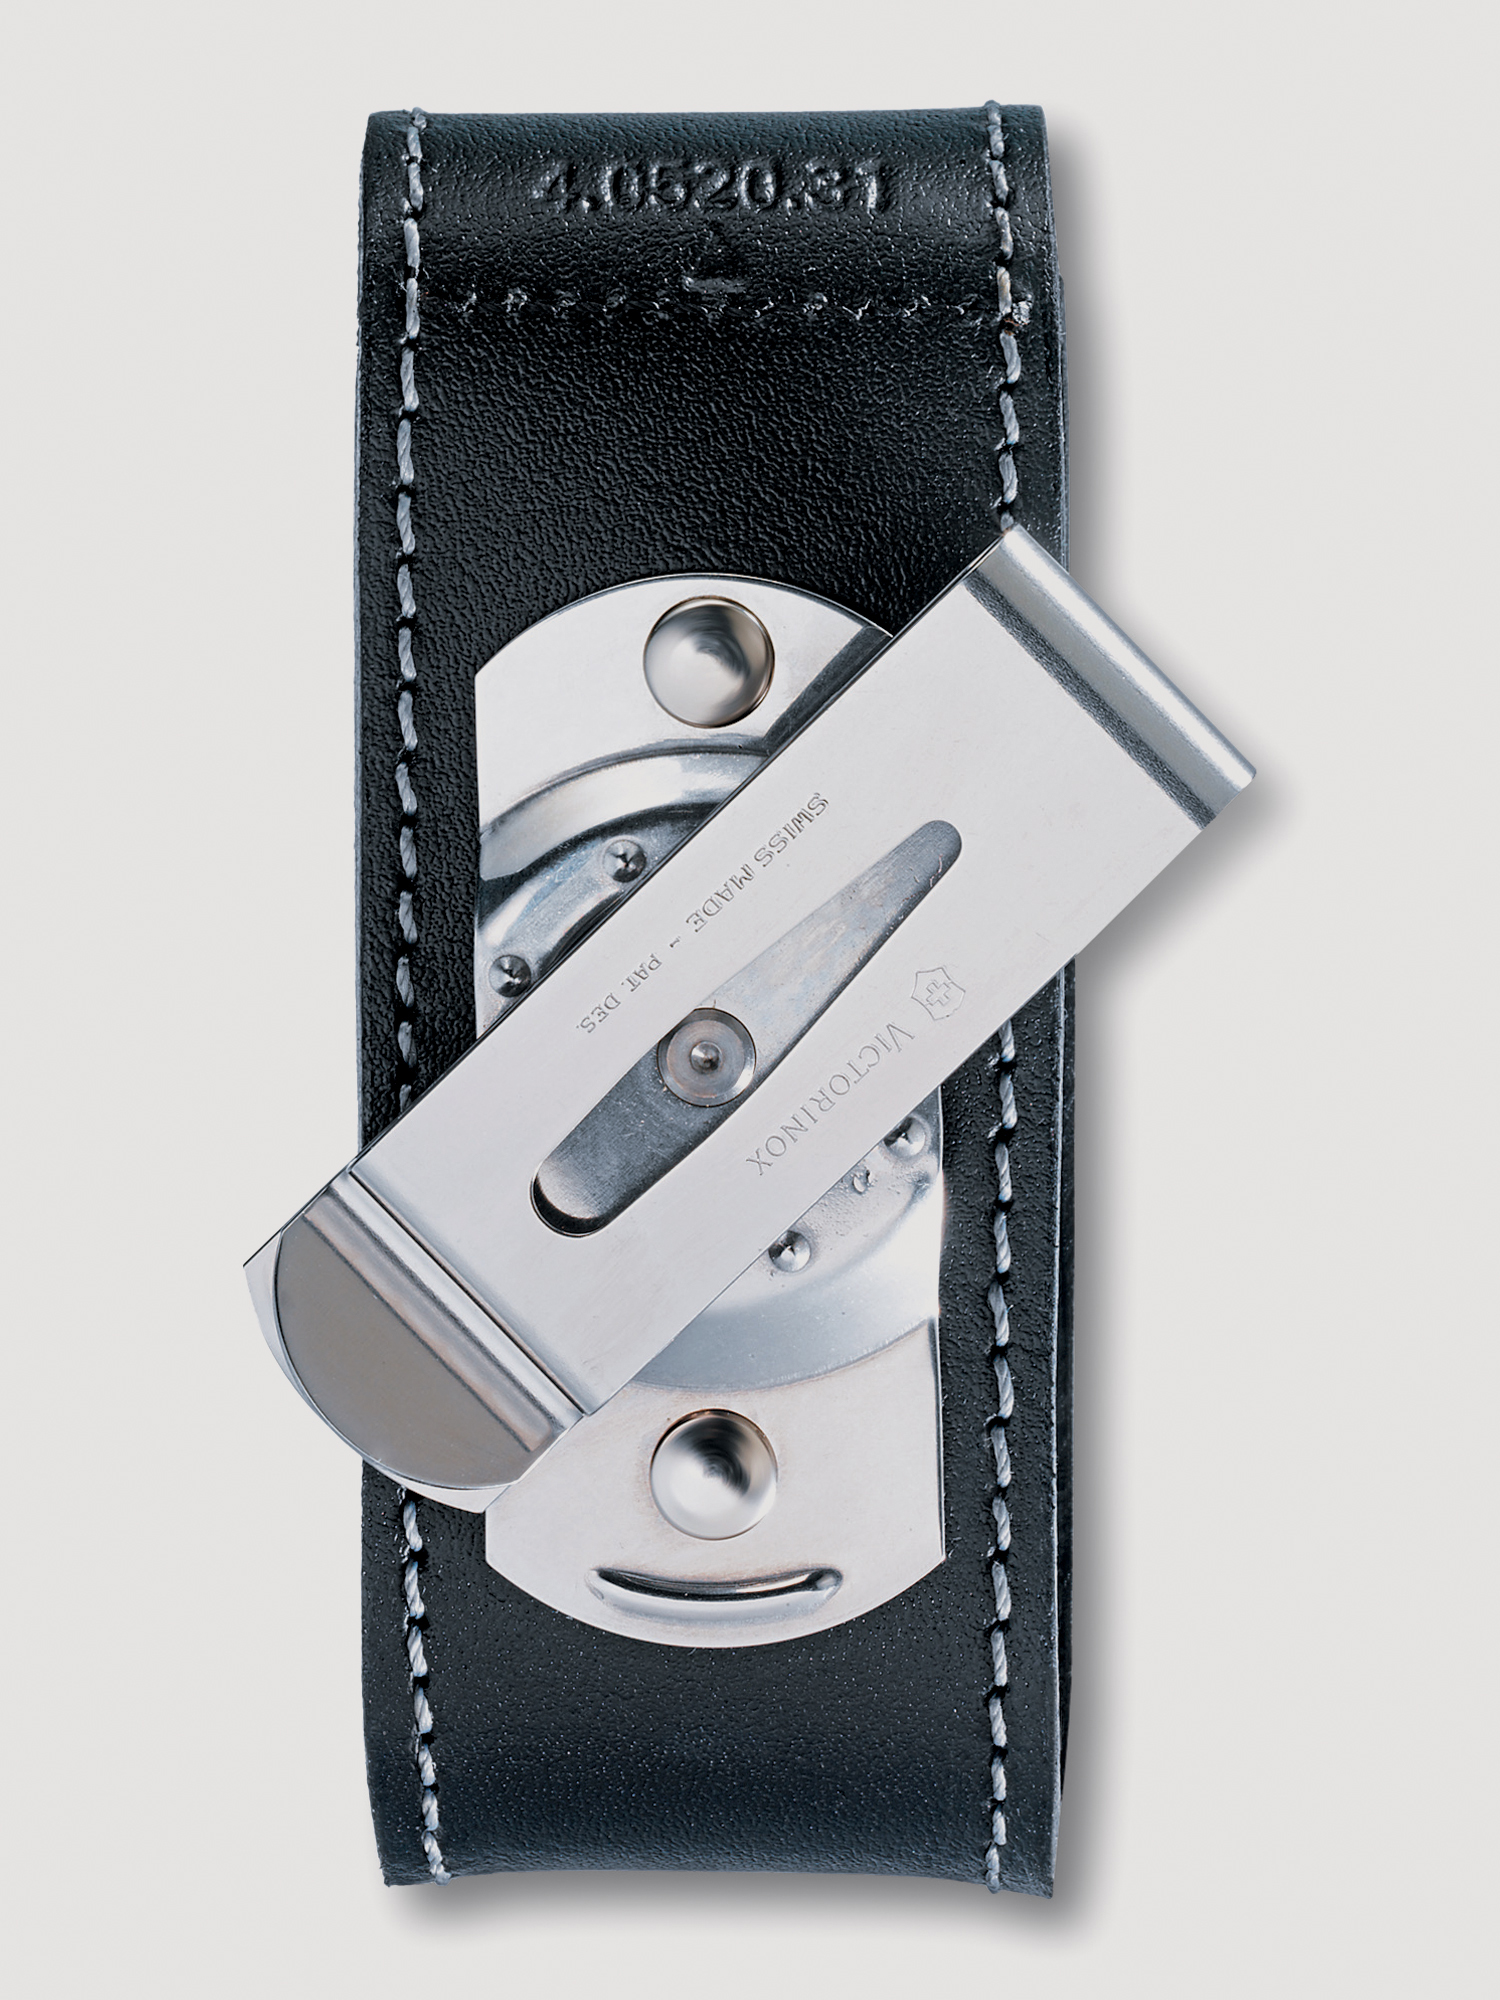 Чехол на ремень VICTORINOX для ножей 91мм толщиной 2-4 уровня, с поворотной клипсой, кожаный, чёрный, Черный чехол на ремень victorinox для ножей 111 мм до 6 уровней с поворотной клипсой кожаный чёрный